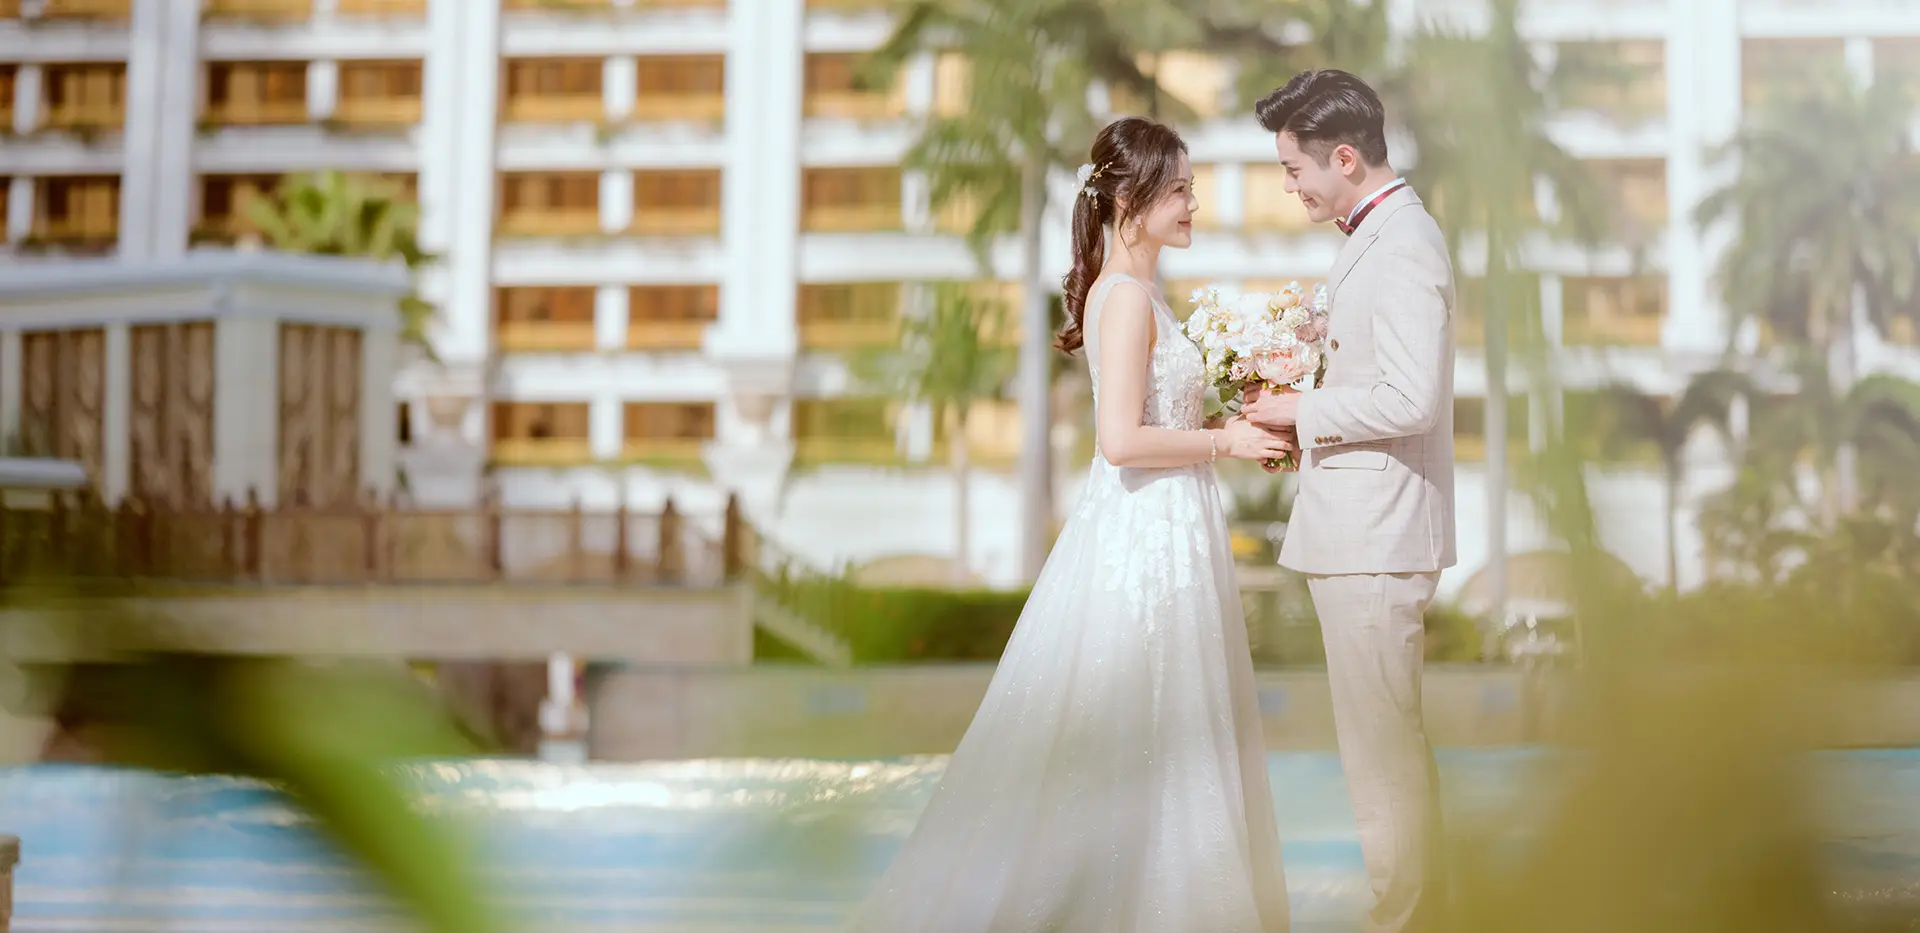 Your Ultimate Dream Wedding - Galaxy Macau